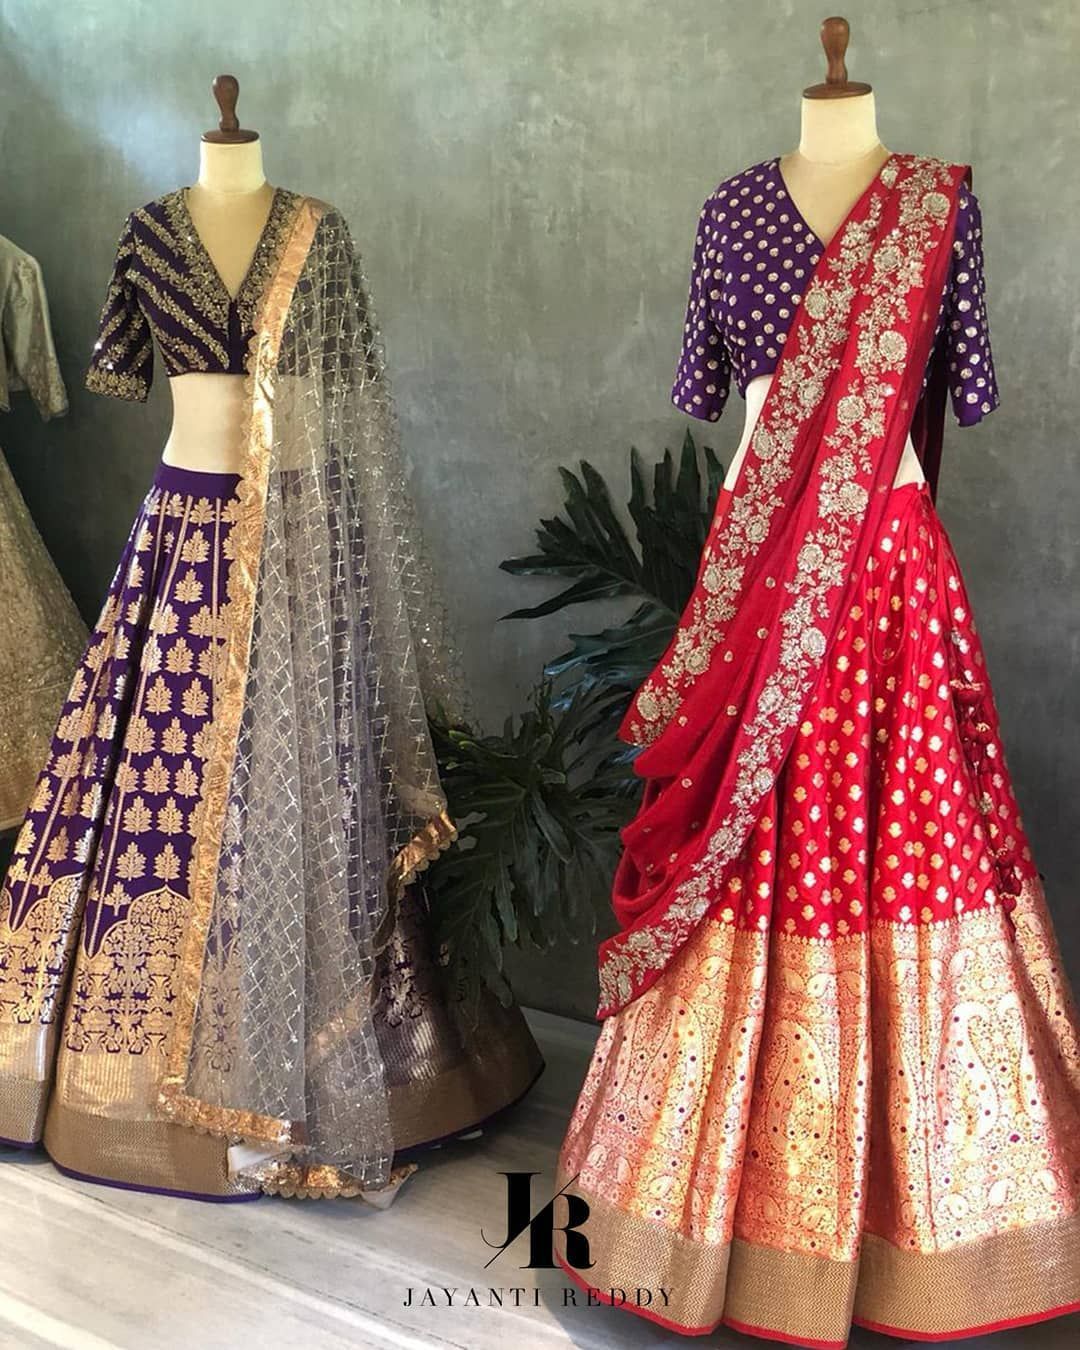 12 dress Indian jewels ideas